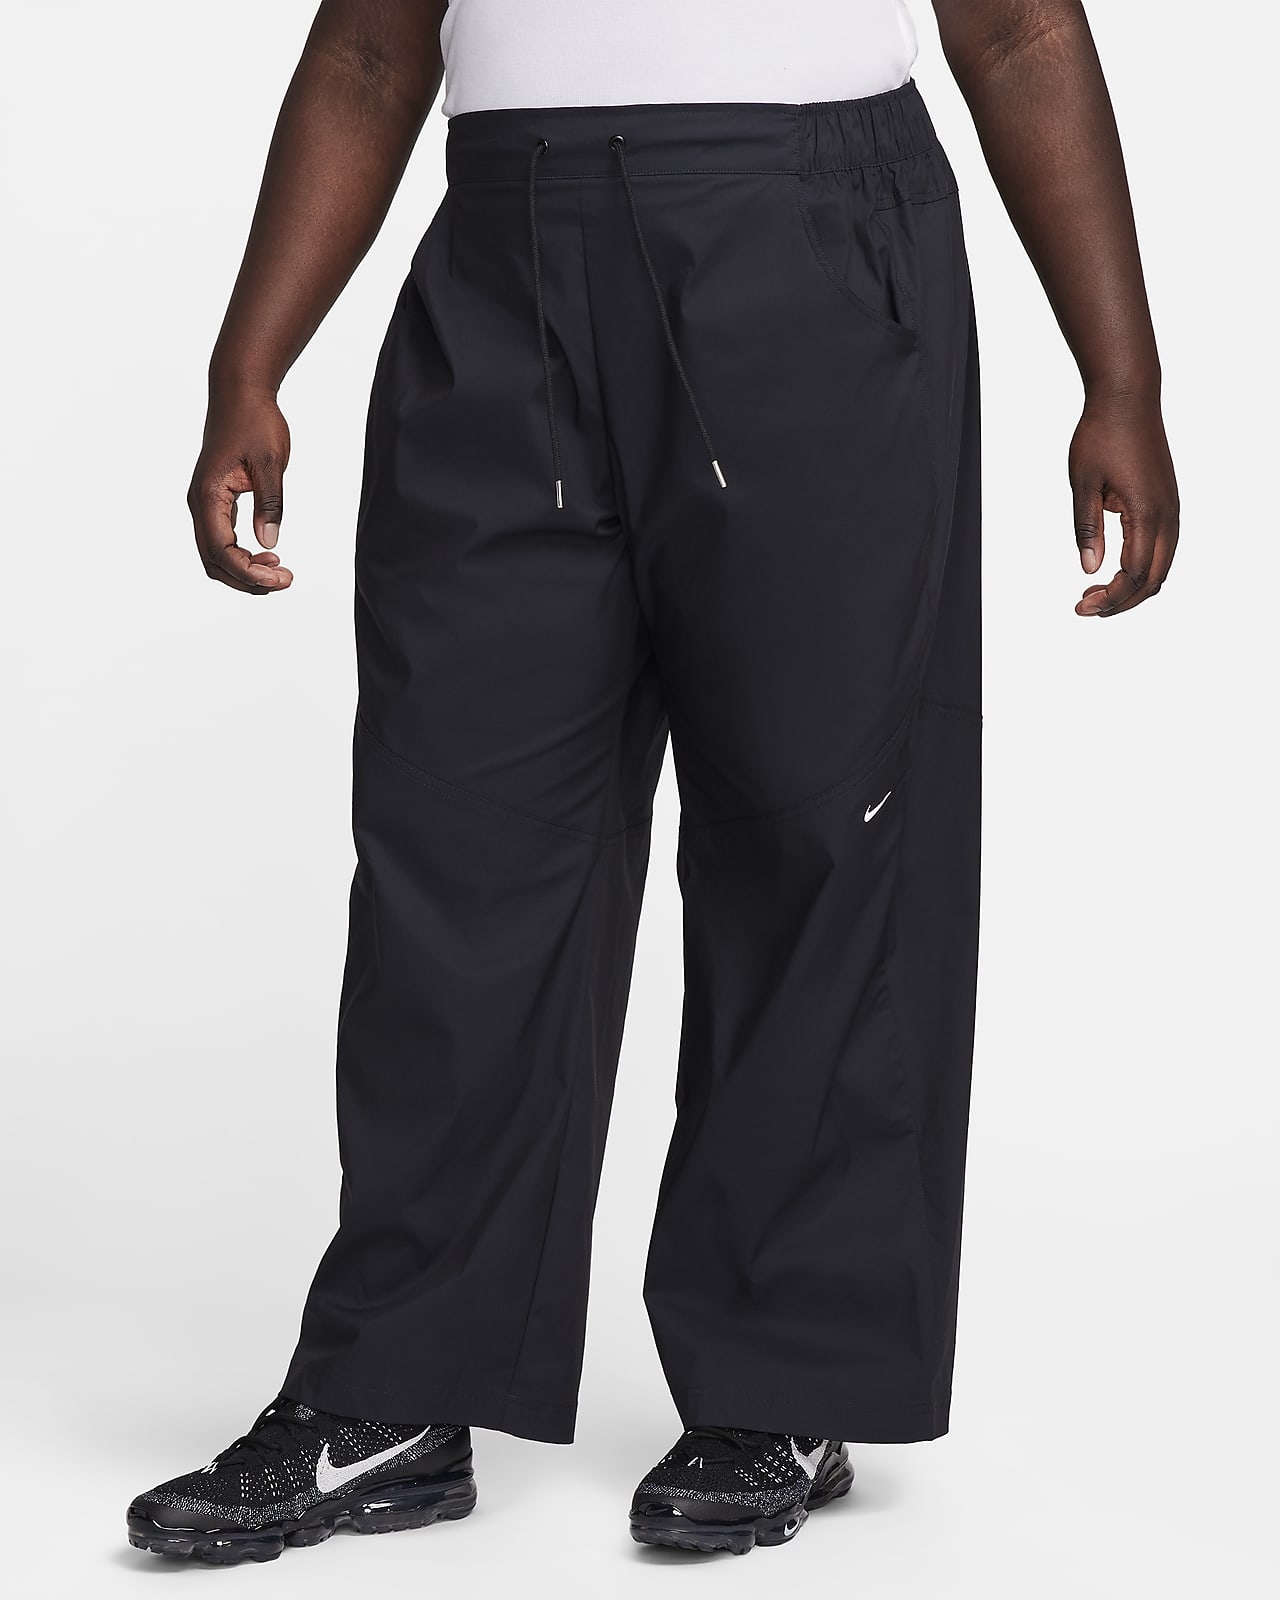 Damskie tkane spodnie z wysokim stanem Nike Sportswear Essential (duże rozmiary)